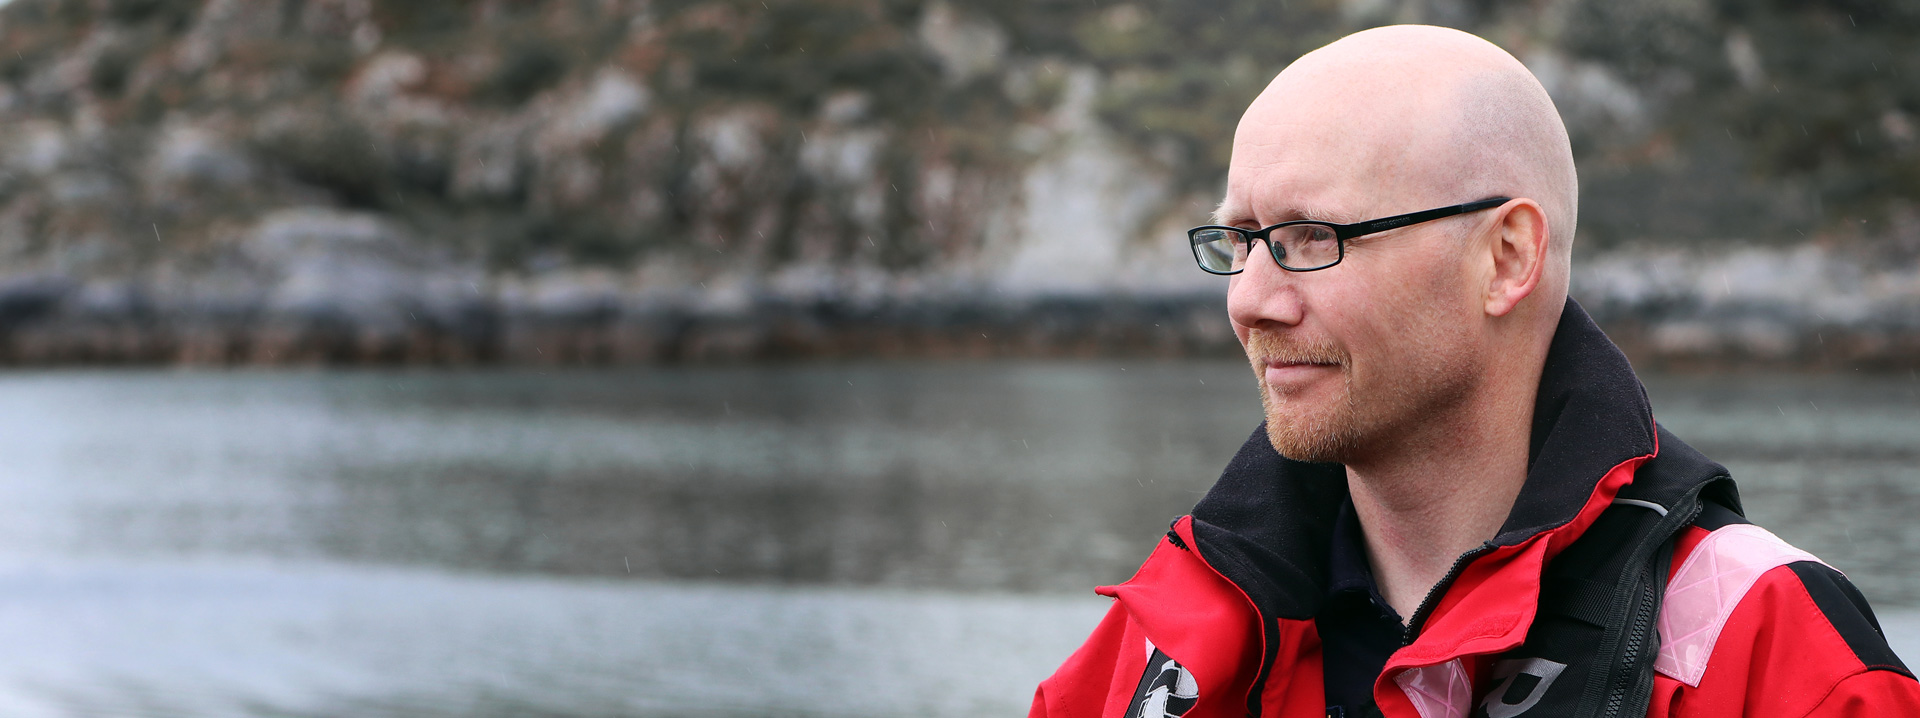 Trond-Olav Johansen mistet faren og onkelen på havet. Erfaringen bruker han nå til å hjelpe andre.